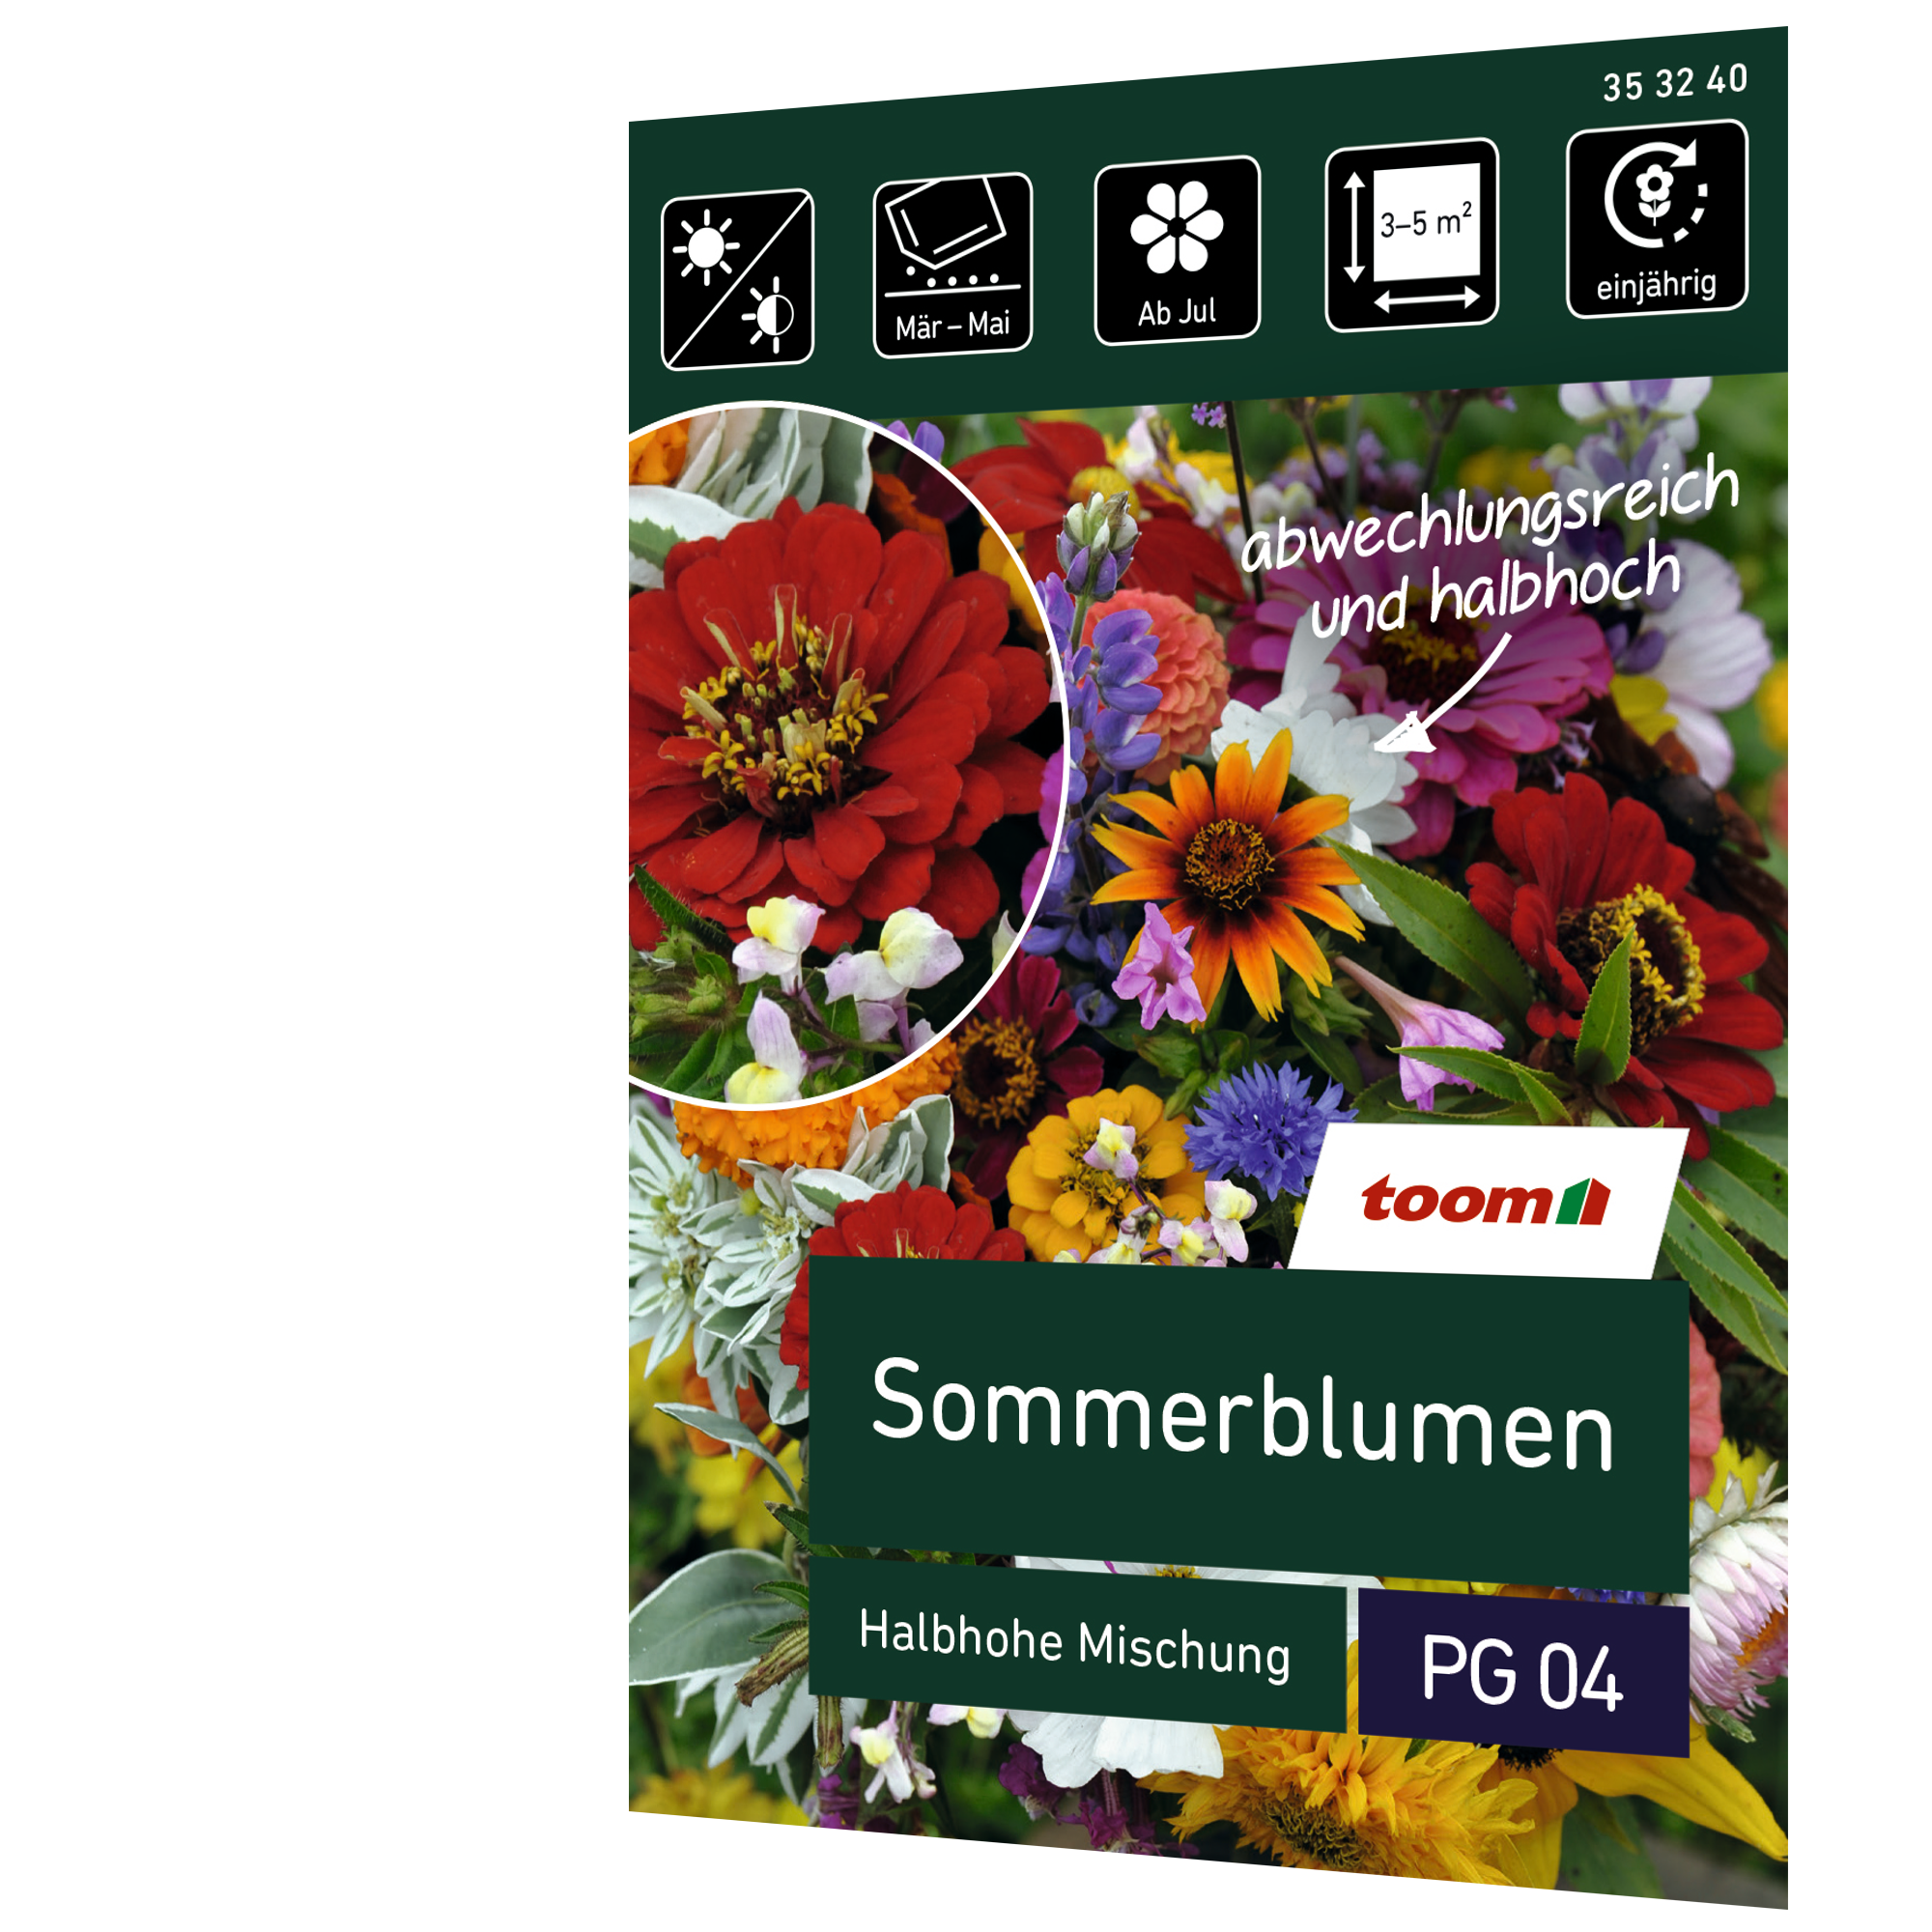 Sommerblumen 'Halbhohe Mischung' + product picture